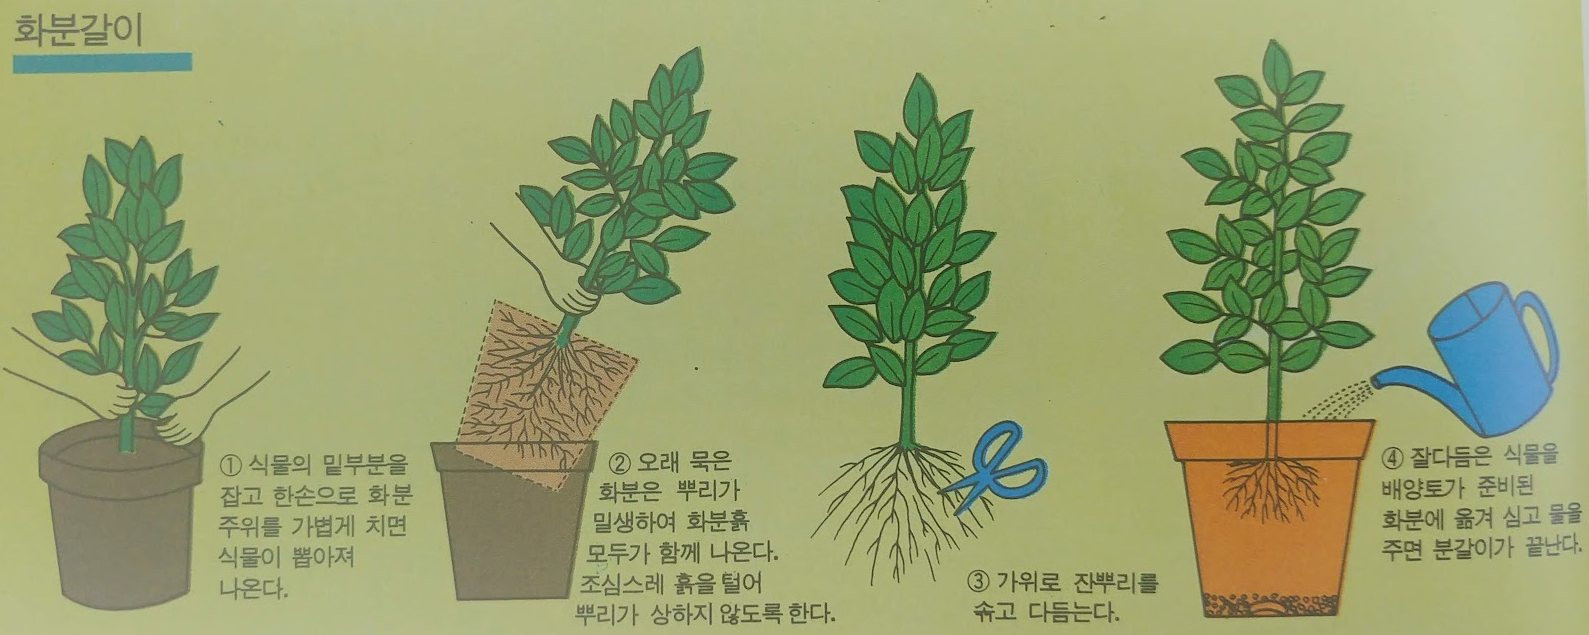 관엽식물 화분갈이 방법